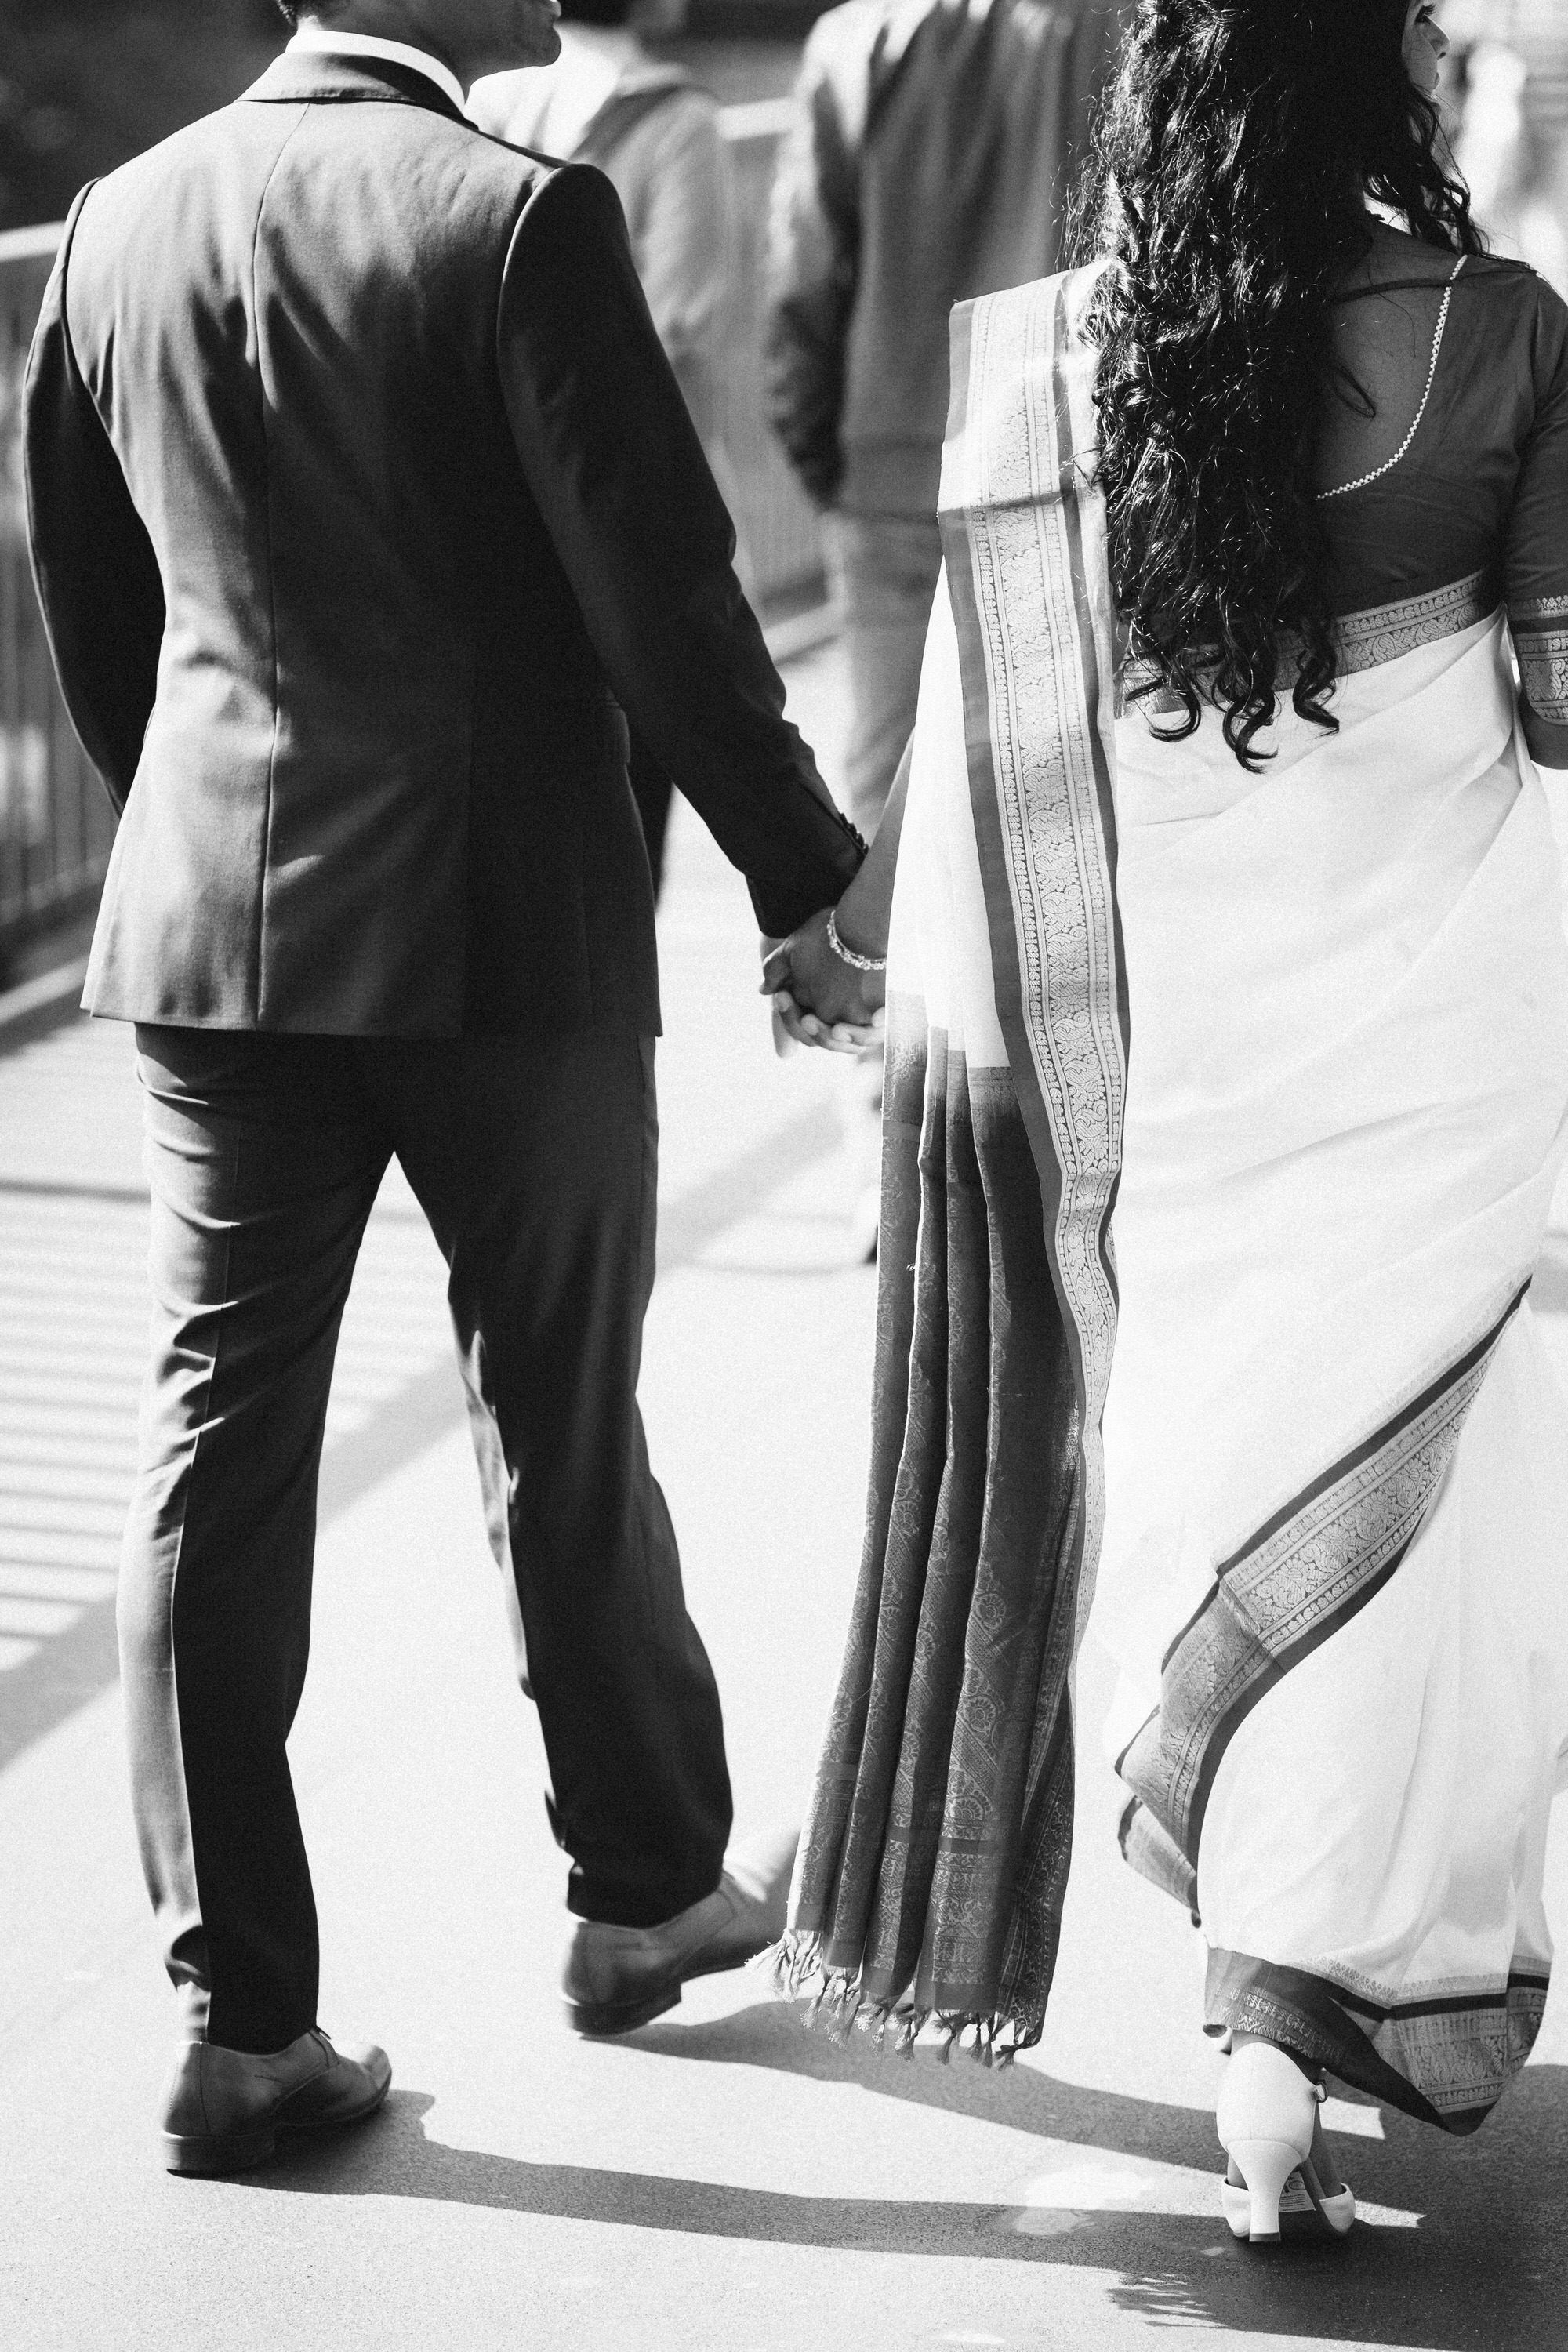 Sehr coole Standesamtliche Hochzeit in Köln ♥ Indisches Paar